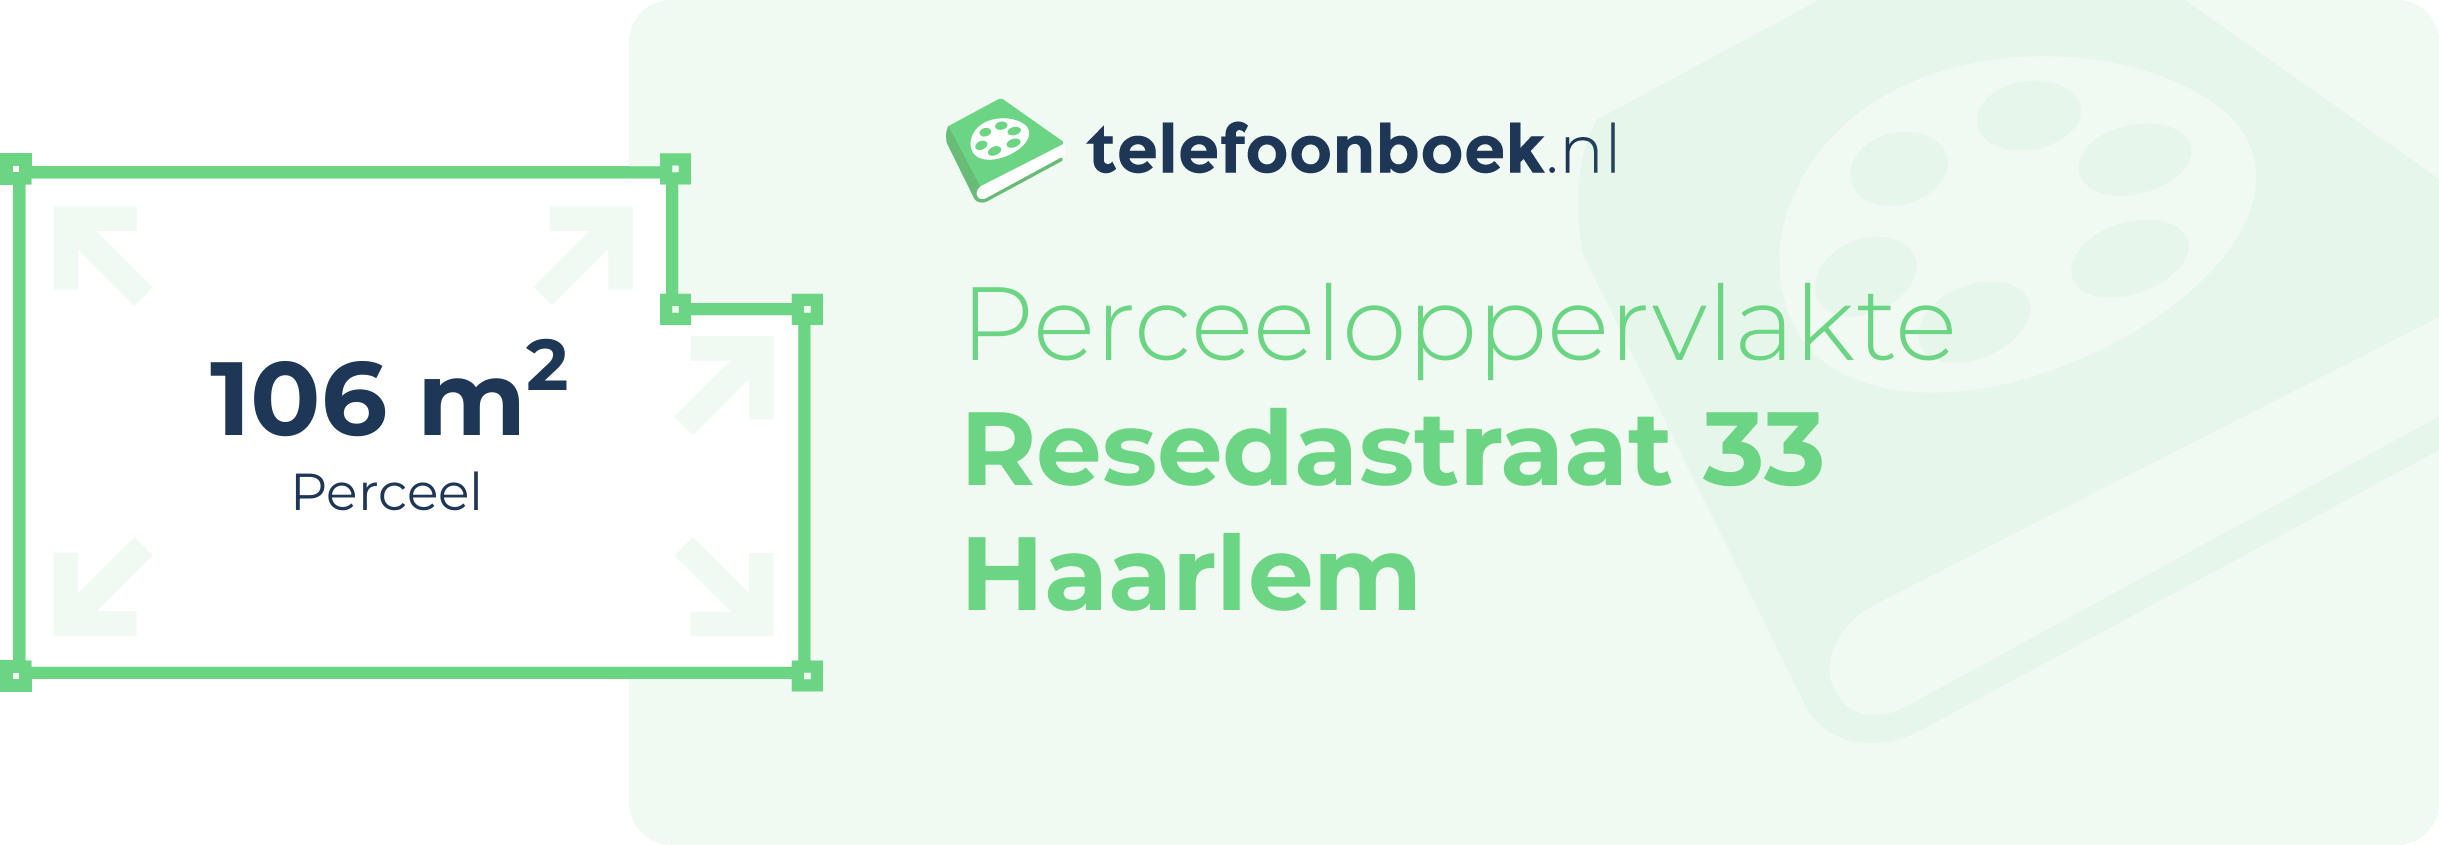 Perceeloppervlakte Resedastraat 33 Haarlem